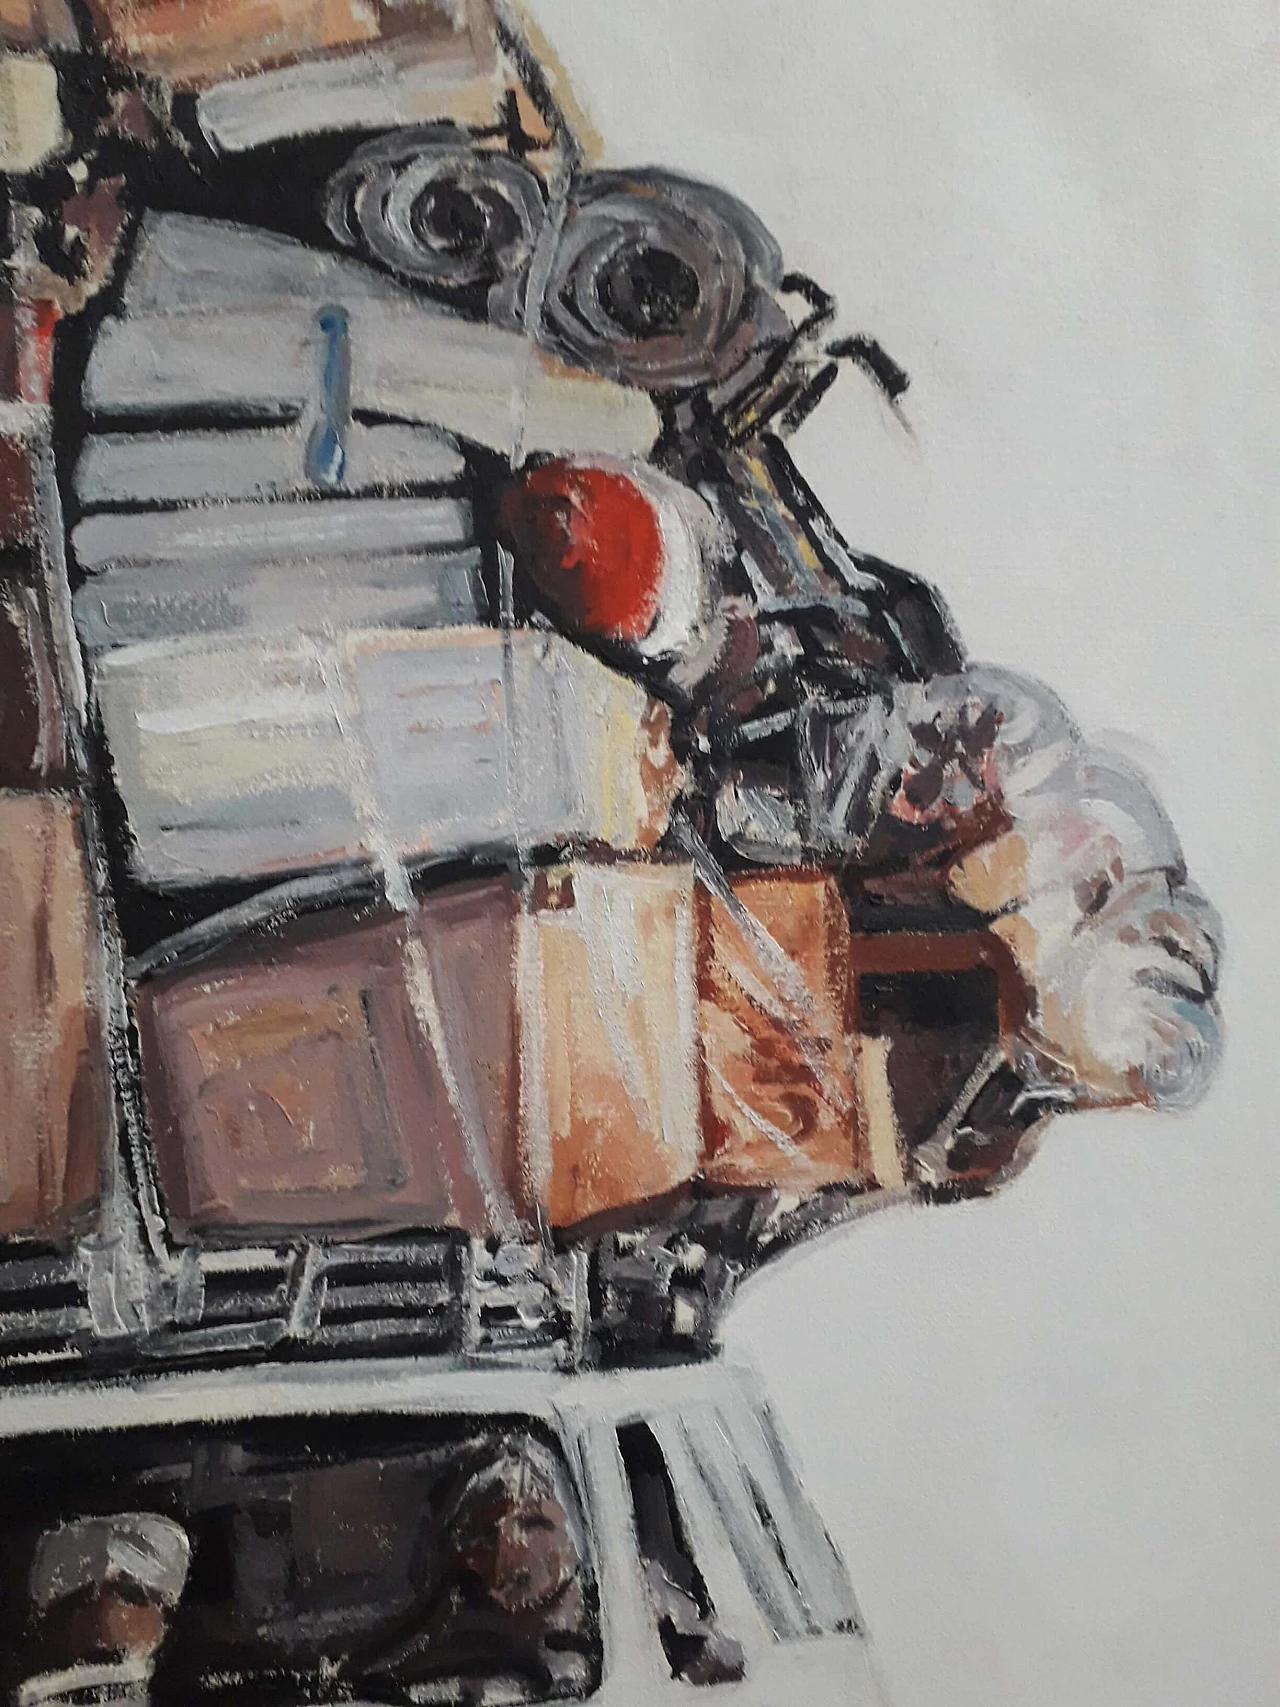 Francesco Sisinni, Cargo, oil on canvas, 2014 4